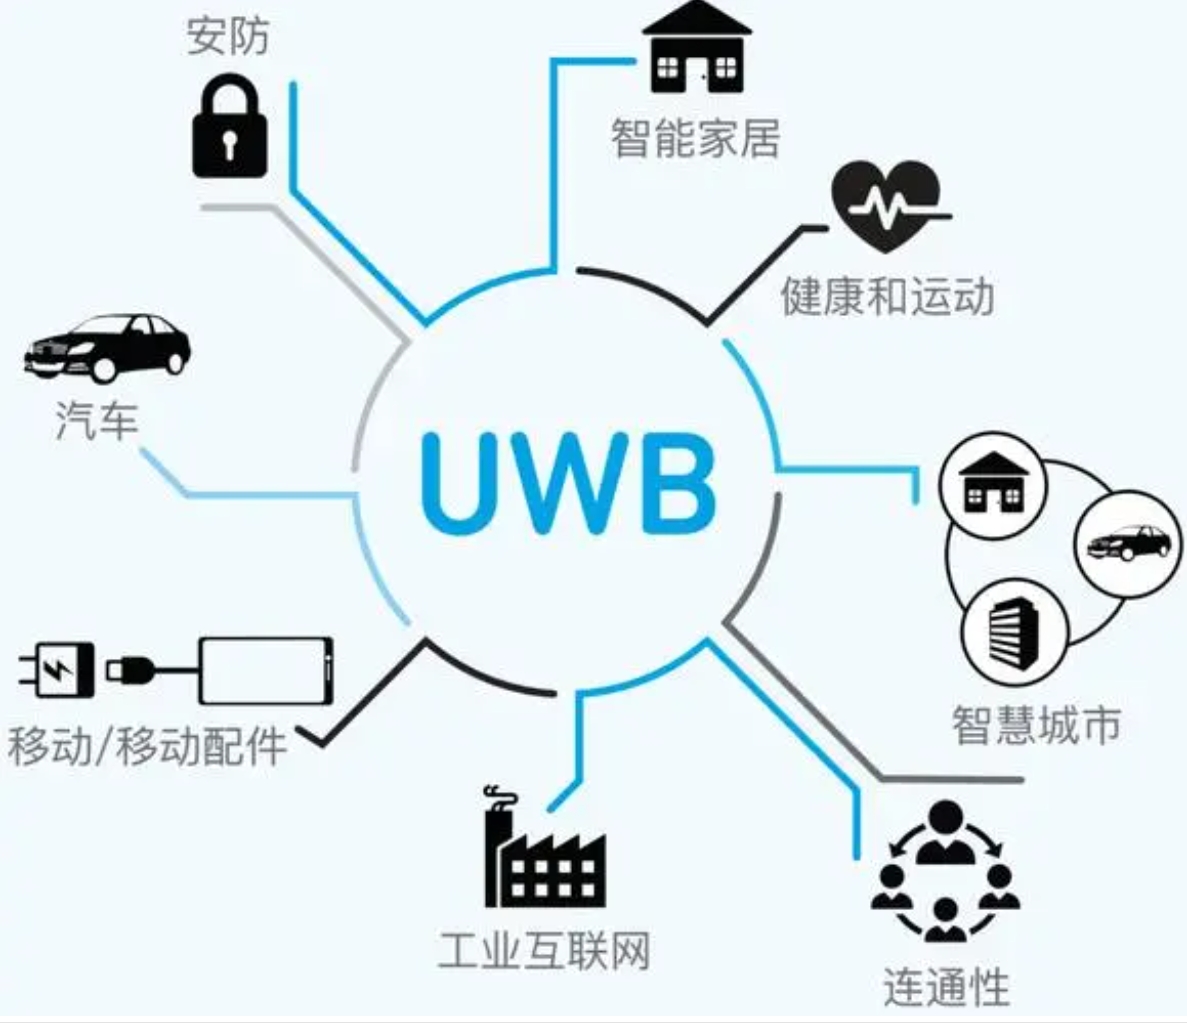 高頻次使用UWB這個(gè)技術(shù)的場(chǎng)景有哪些？怎么推廣UWB？